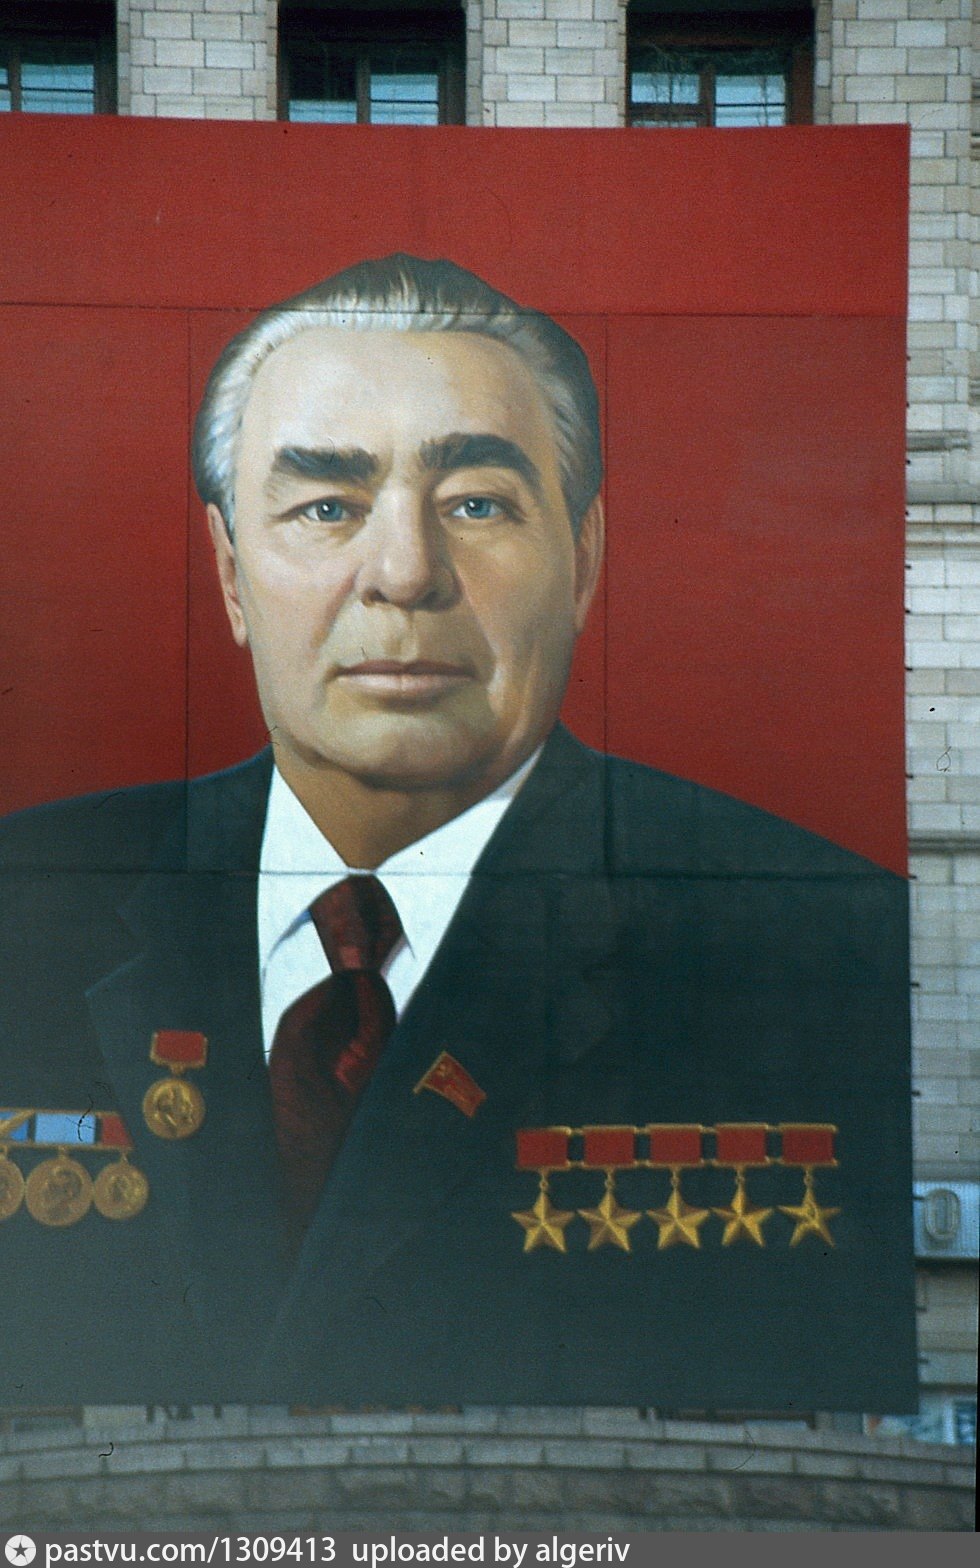 Глазунов портрет Брежнева